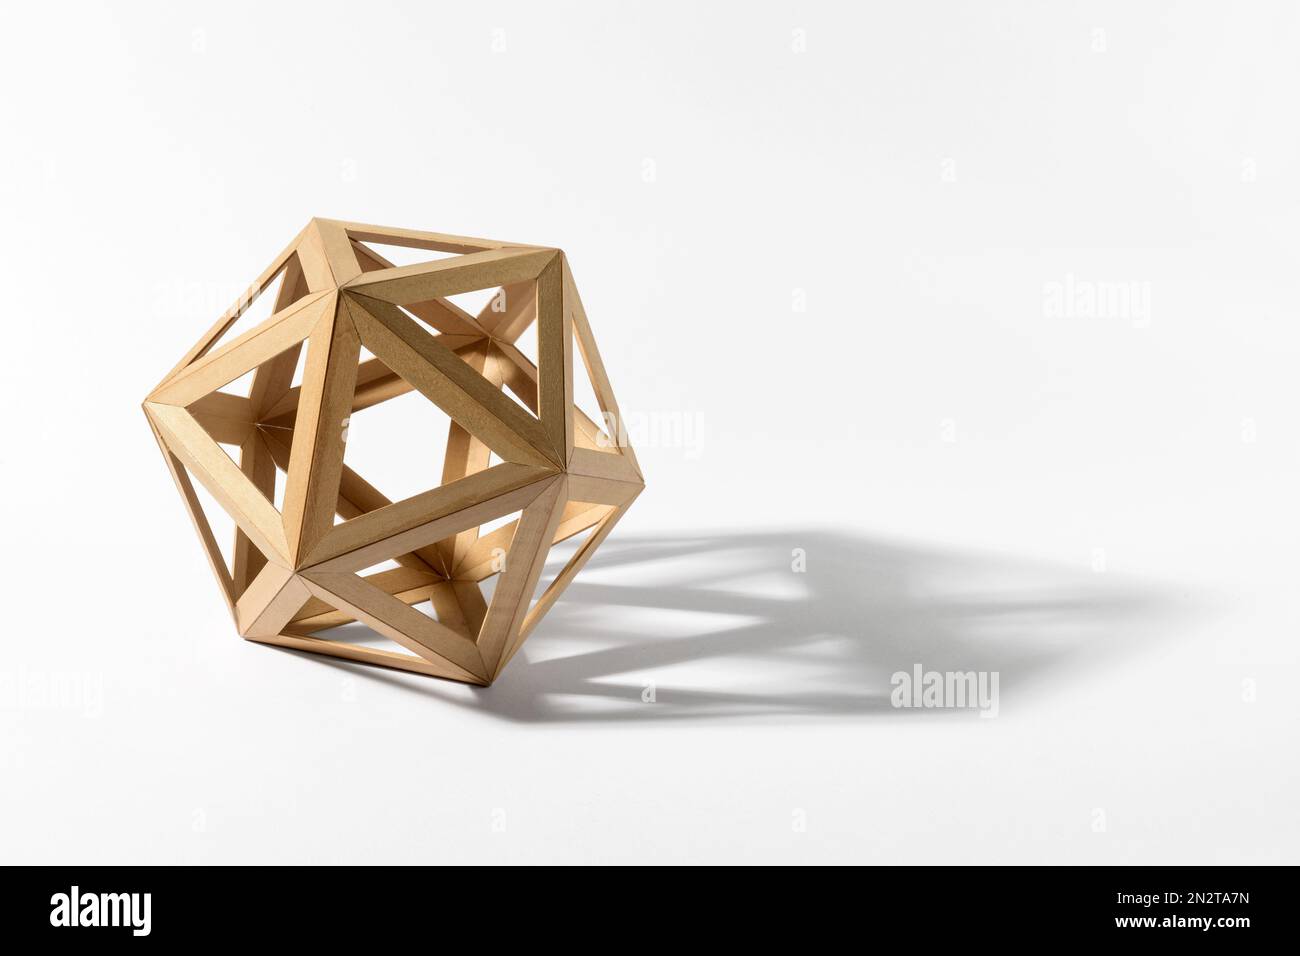 Forma de icosaedro sólido platónico hecha de sombra de fundición de madera clara sobre fondo gris Foto de stock